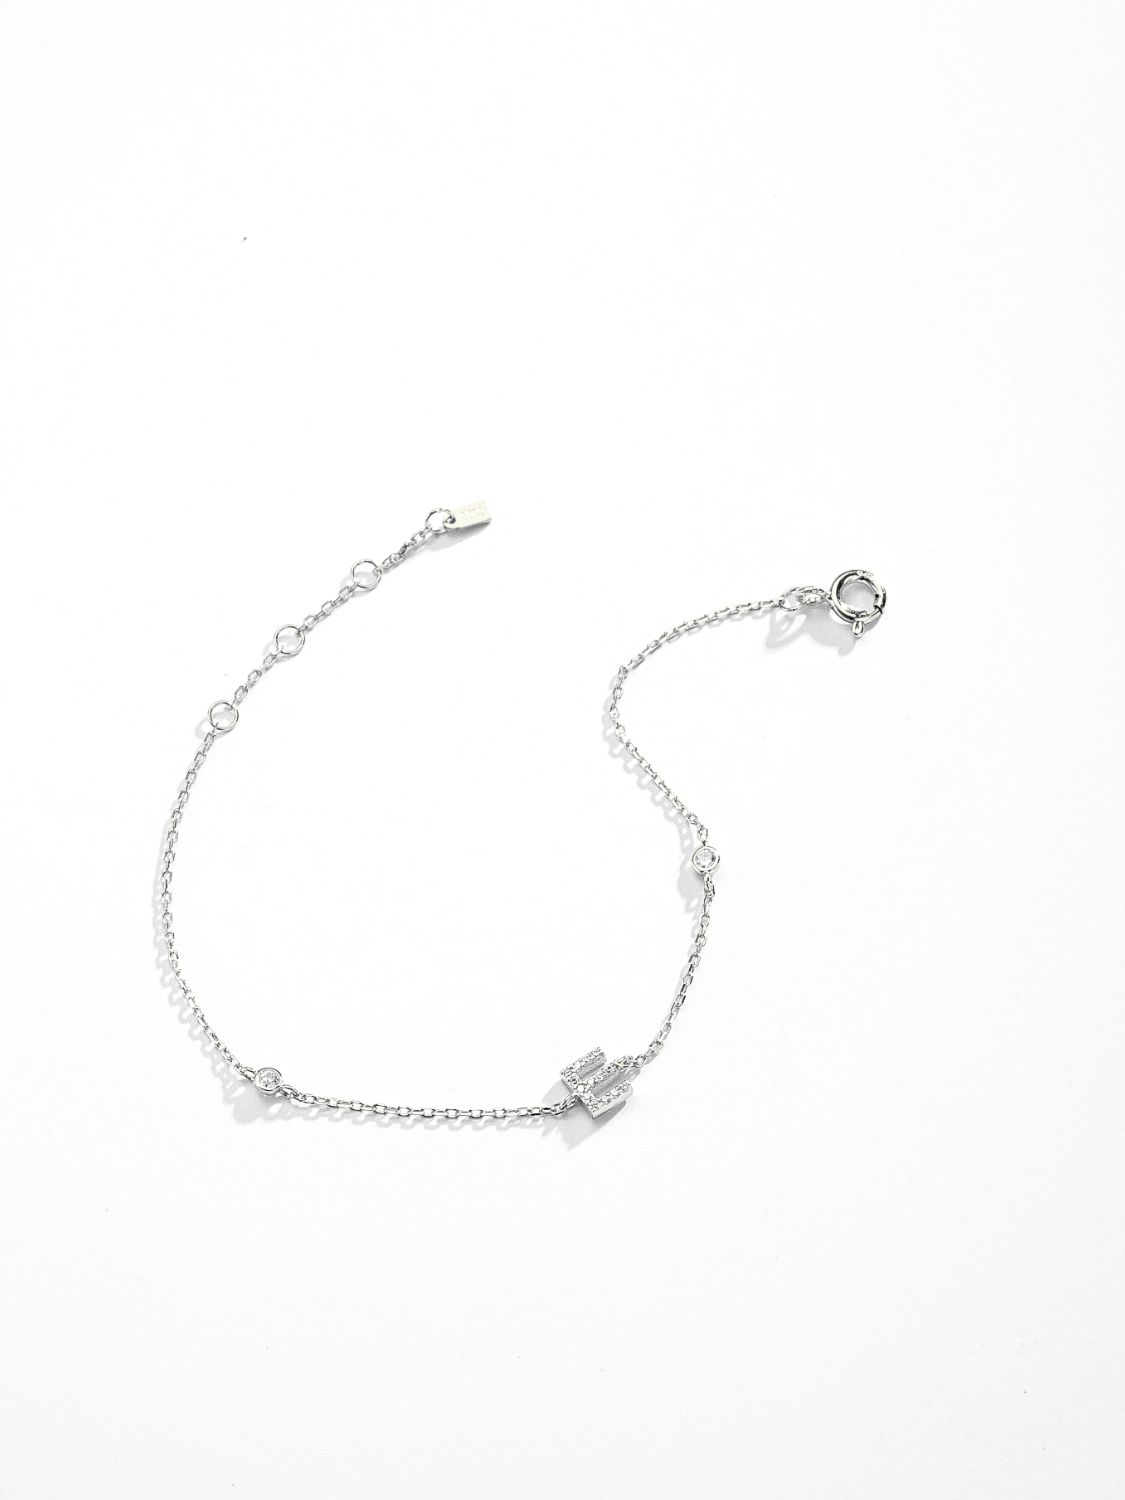 A To F Zircon 925 Sterling Silver Bracelet - Women’s Jewelry - Bracelets - 29 - 2024